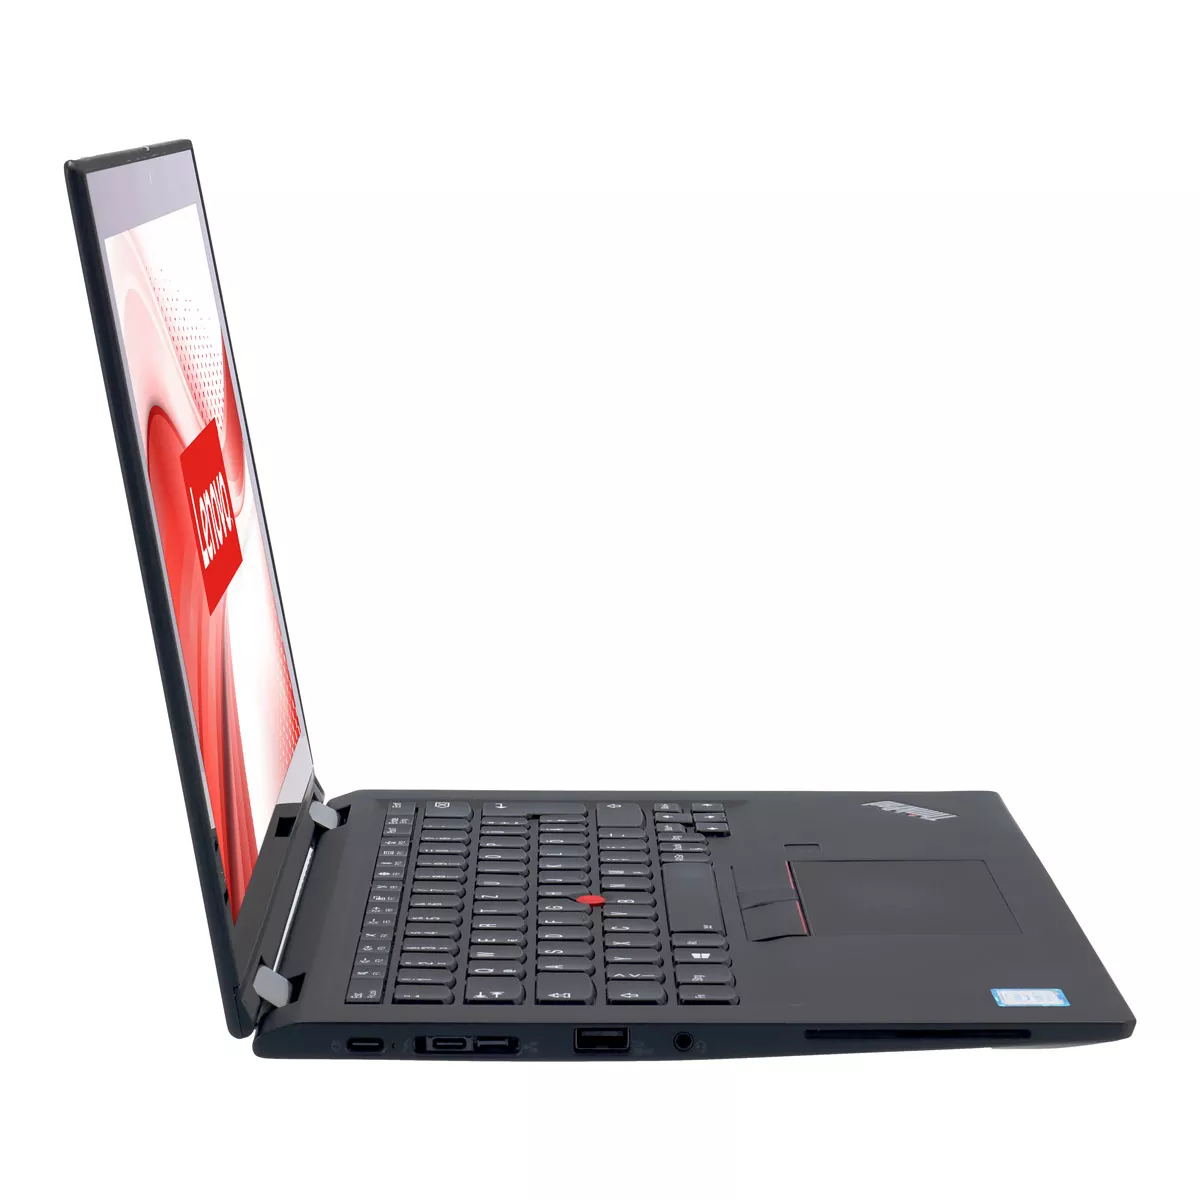 Lenovo ThinkPad X390 Yoga Core i5 8265U Touch 8 GB 240 GB M.2 nVME SSD Webcam B